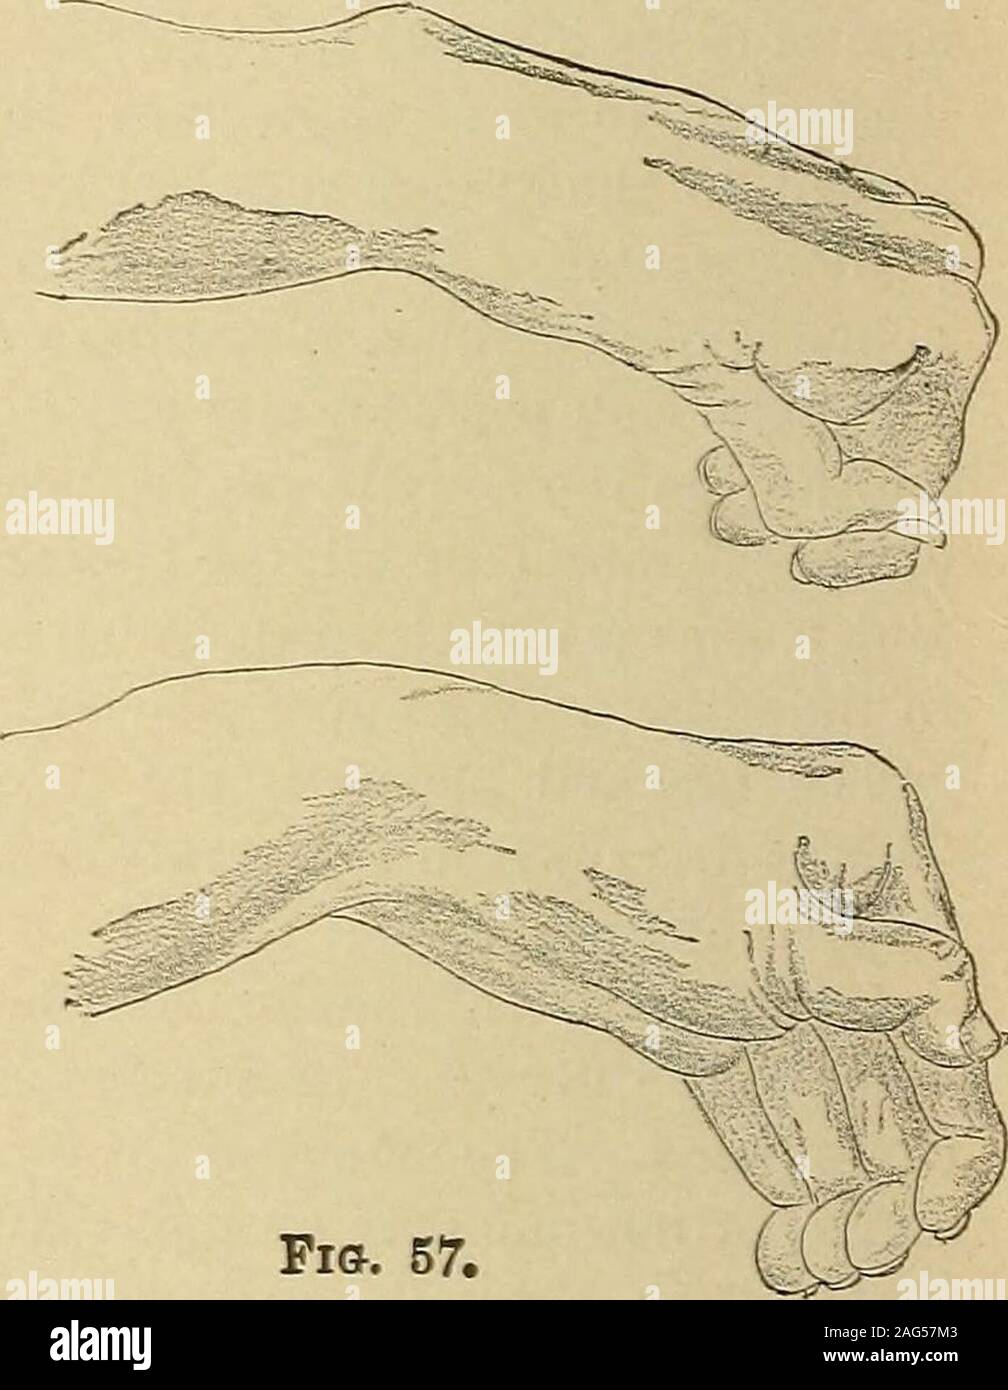 . Ein Handbuch von Krankheiten des Nervensystems. Pi &. 57. Schwein. 55. âCombined Lähmung des M. deltoideus, snpra - spinatns und infra-spinatns, von einem Sturz auf die Schulter. Feigen. 56, 57. âLeft Hand eines Patienten leiden unter einem Wachstum neben den unteren cervicalspine drückt die Nerv-Wurzeln. Es gab suppliedby ansesthesia aller Teile der A. brachialis und zervikalen Plexus. Der Arm war adducted, der Ellbogen gebeugt, thehand in der Haltung gezeigt, Flexion des ersten, Verlängerung der Zweiten, stark flexionof letzte Phalangen, die erste Phalanx der Daumen über - Erweiterte, die zweite Ausgelenkt. Steifigkeit extrem, und ein Versuch, ov Stockfoto